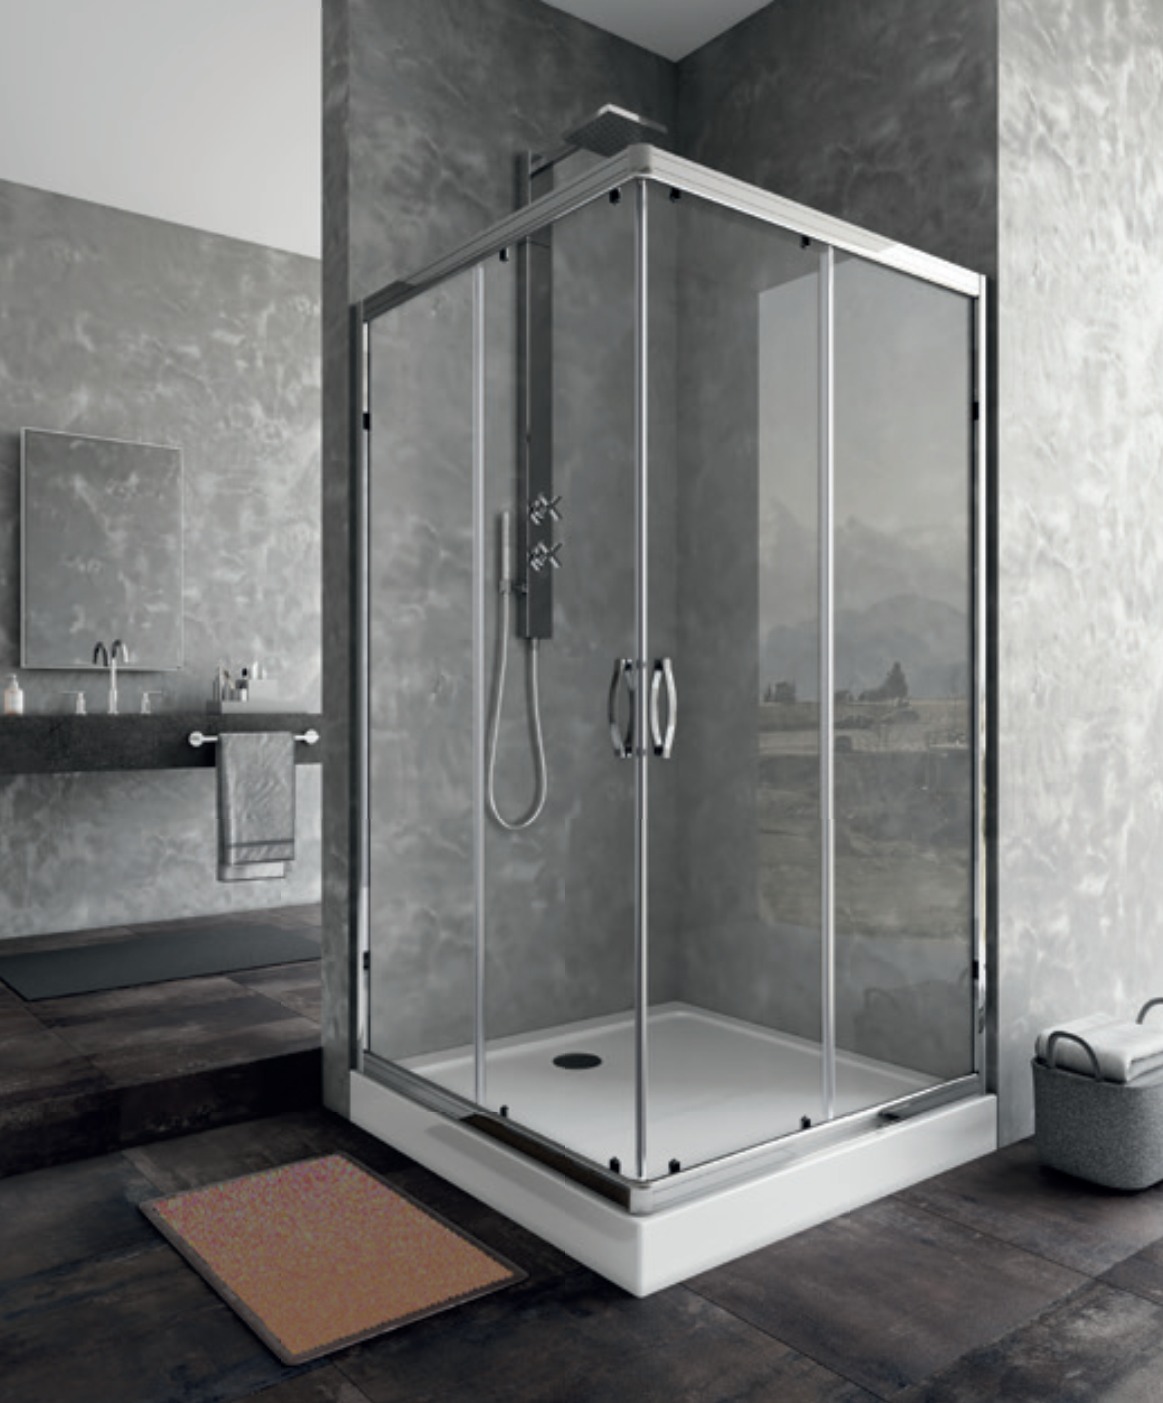 ROME Shower Cabinet, 81-ROMSHC